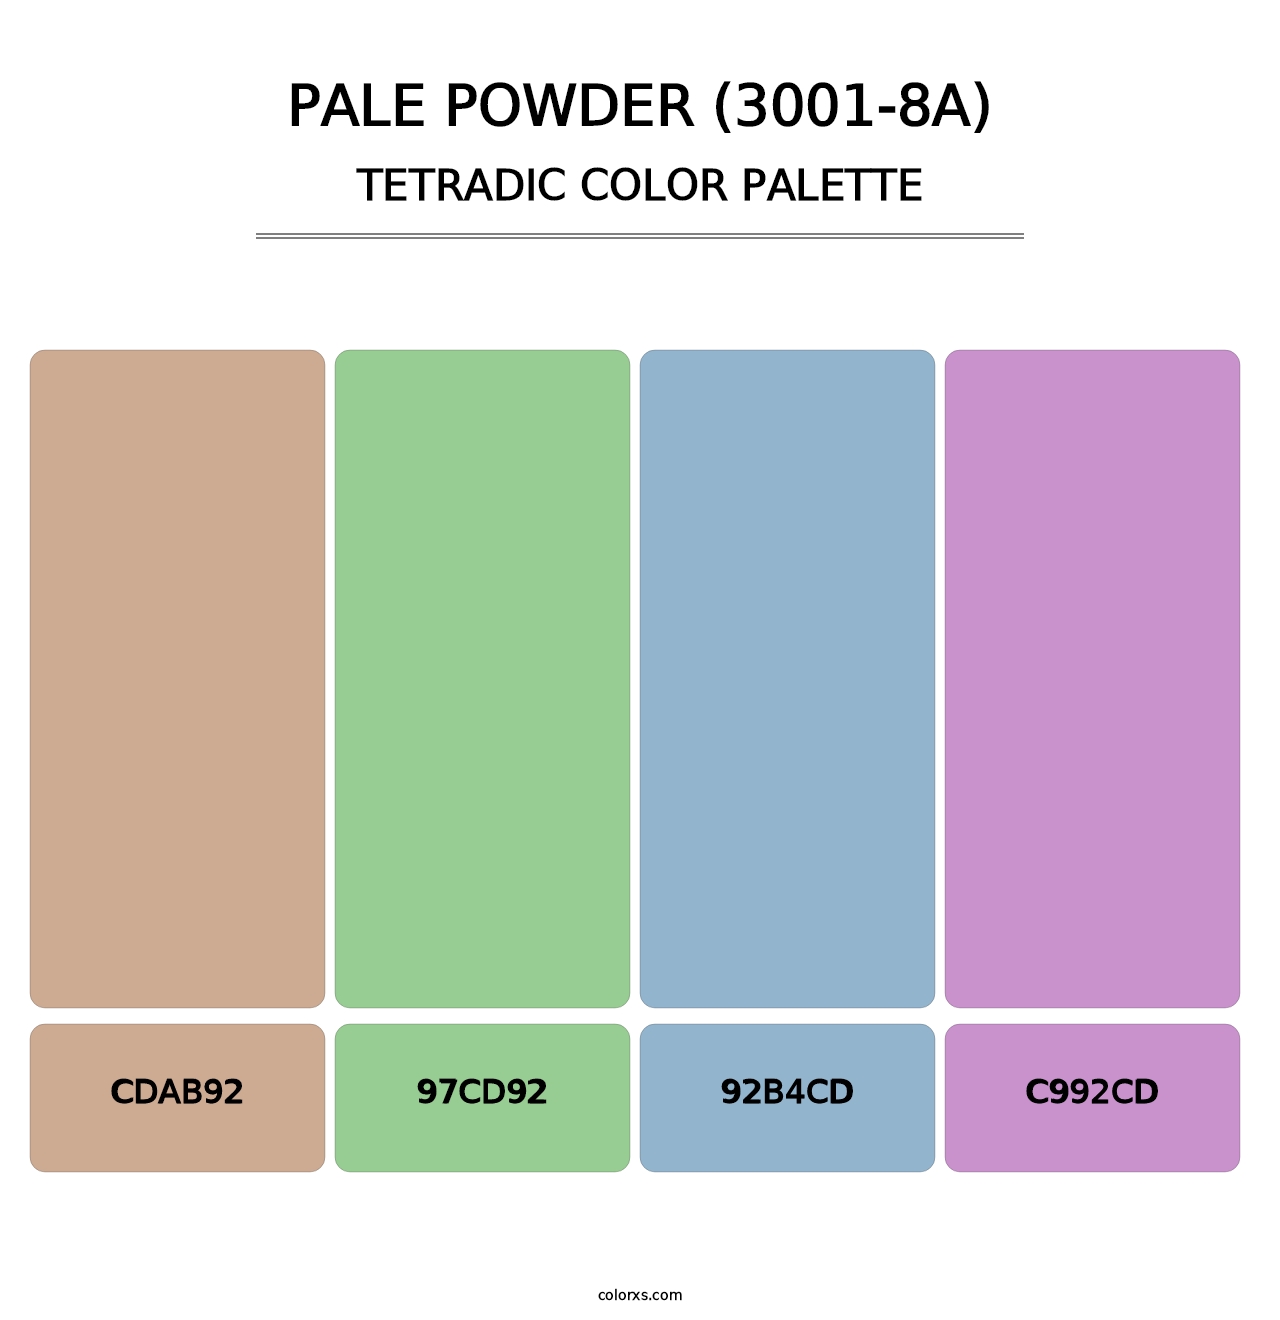 Pale Powder (3001-8A) - Tetradic Color Palette